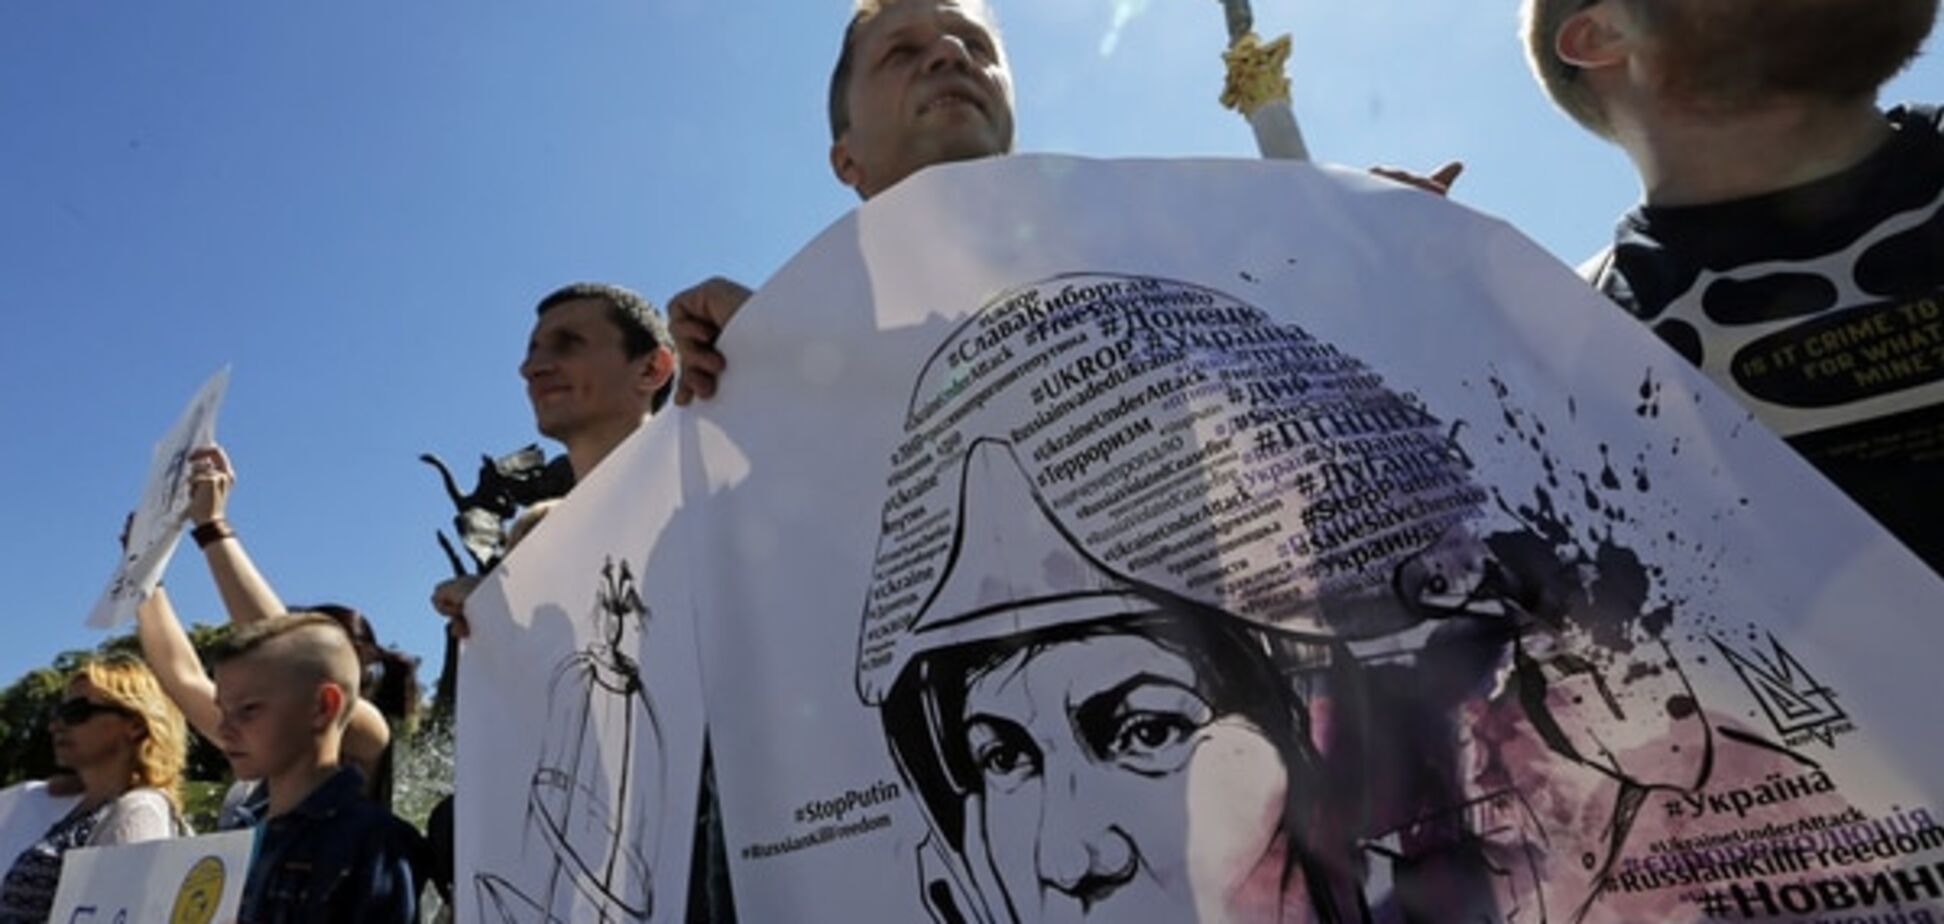 'Політика замість правосуддя': у Росії передрекли льотчиці Савченко суворий вирок